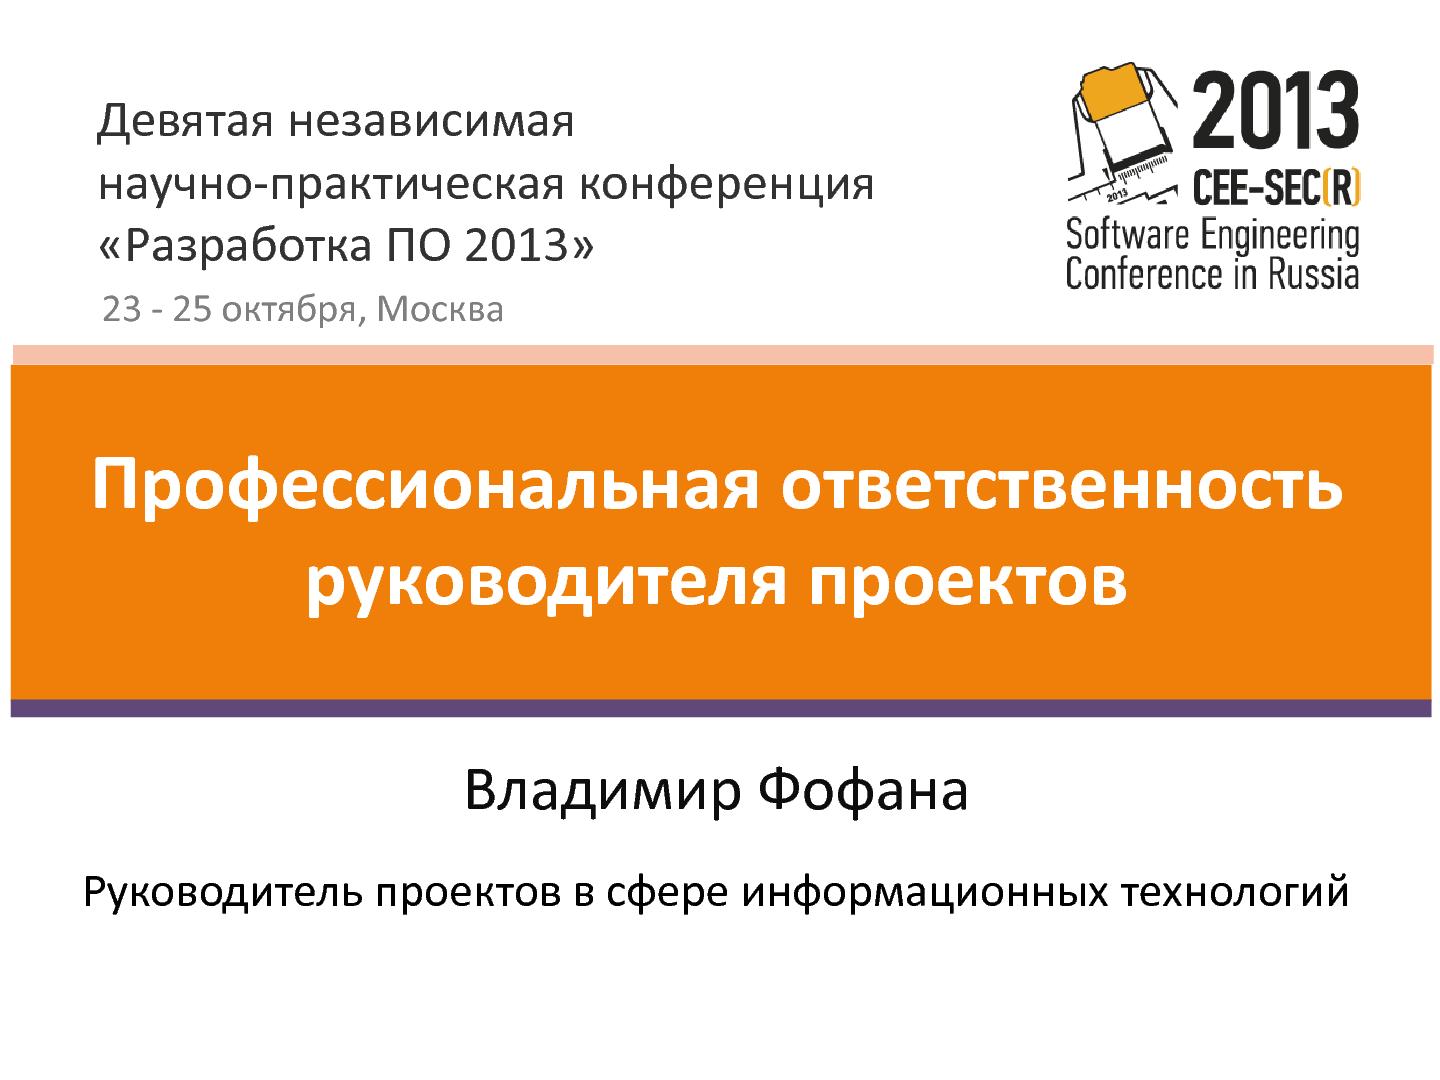 Файл:Профессиональная ответственность руководителя проектов (Владимир Фофана, SECR-2013).pdf